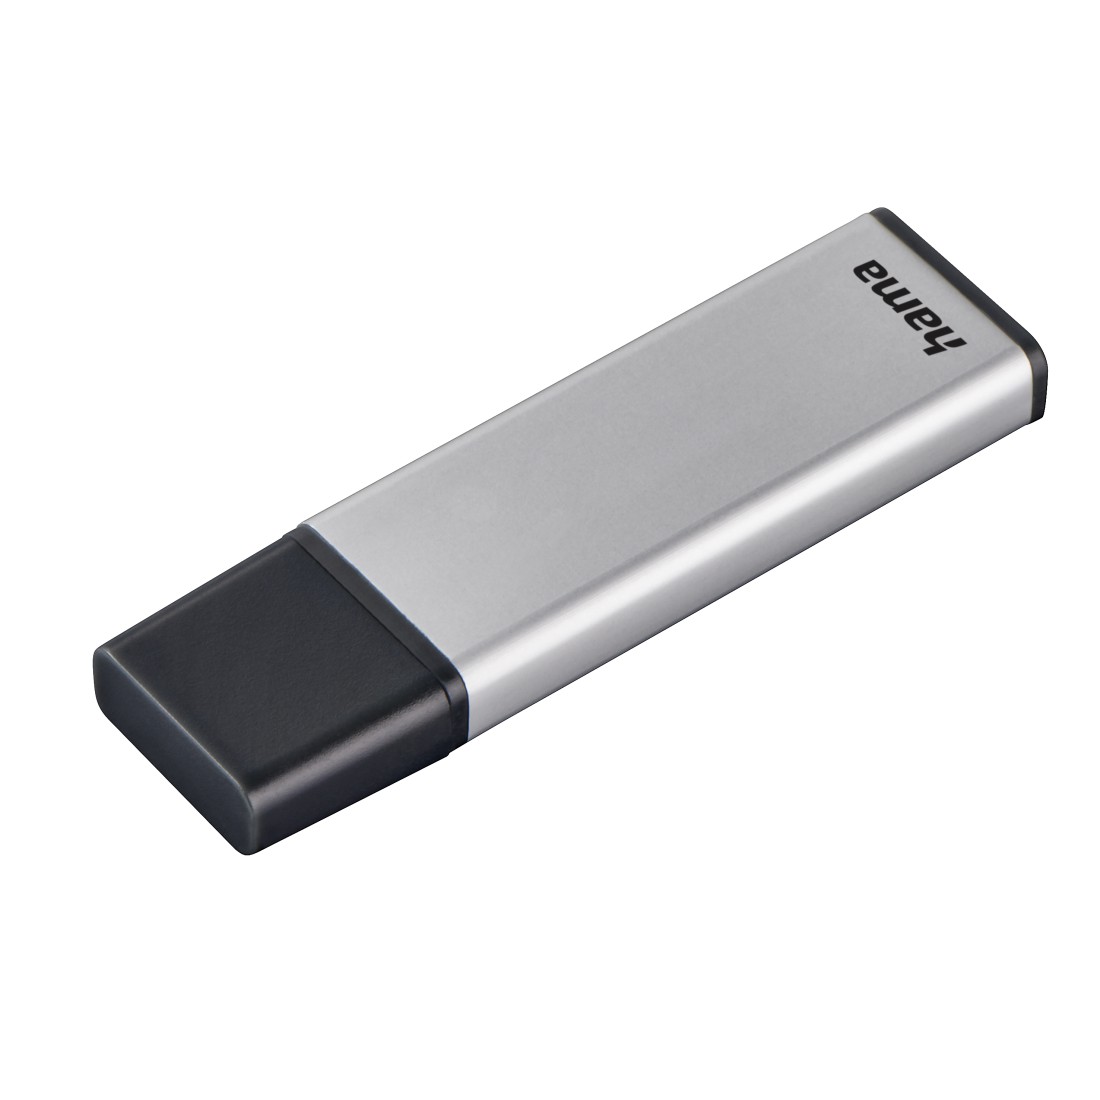 00181054 Hama "Classic" USB Stick, USB 3.0, 128 GB, 90 MB/s, silver